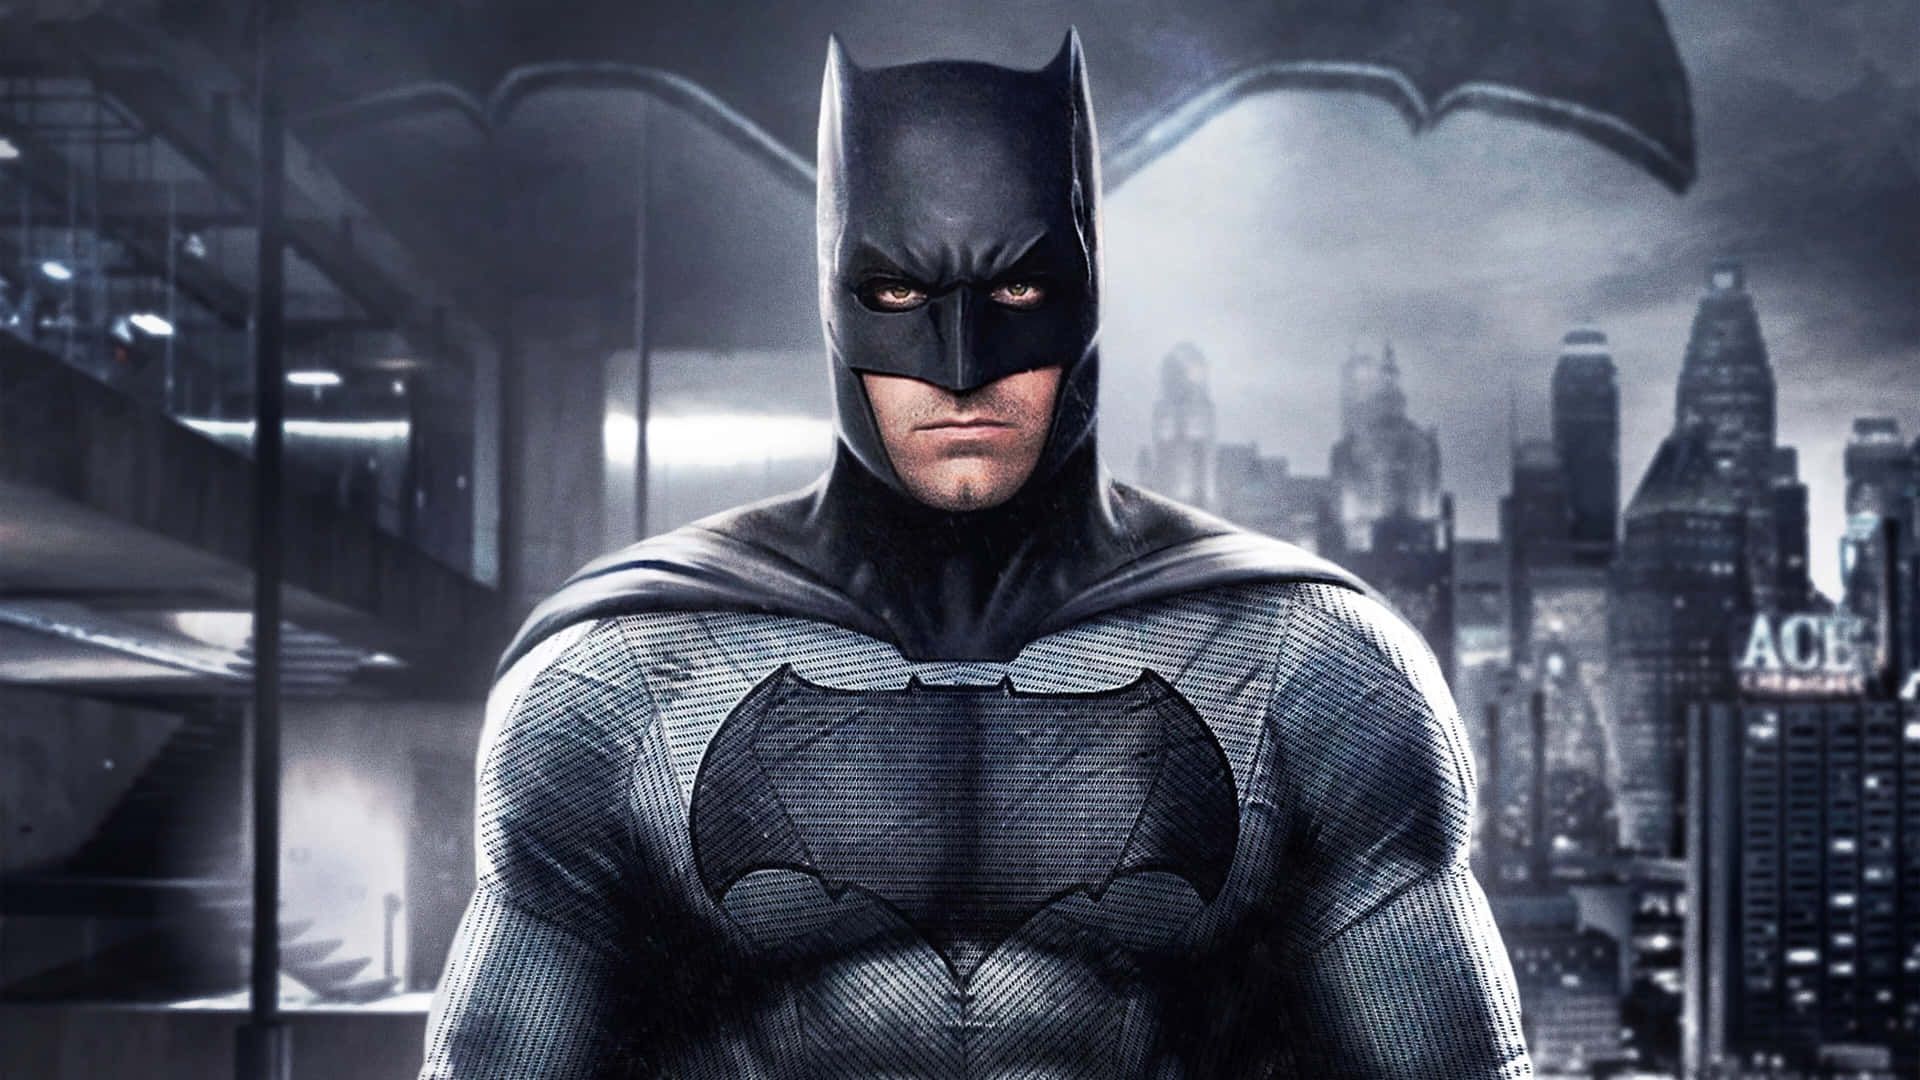 Dark Knight Gotham City Vigilance.jpg Wallpaper